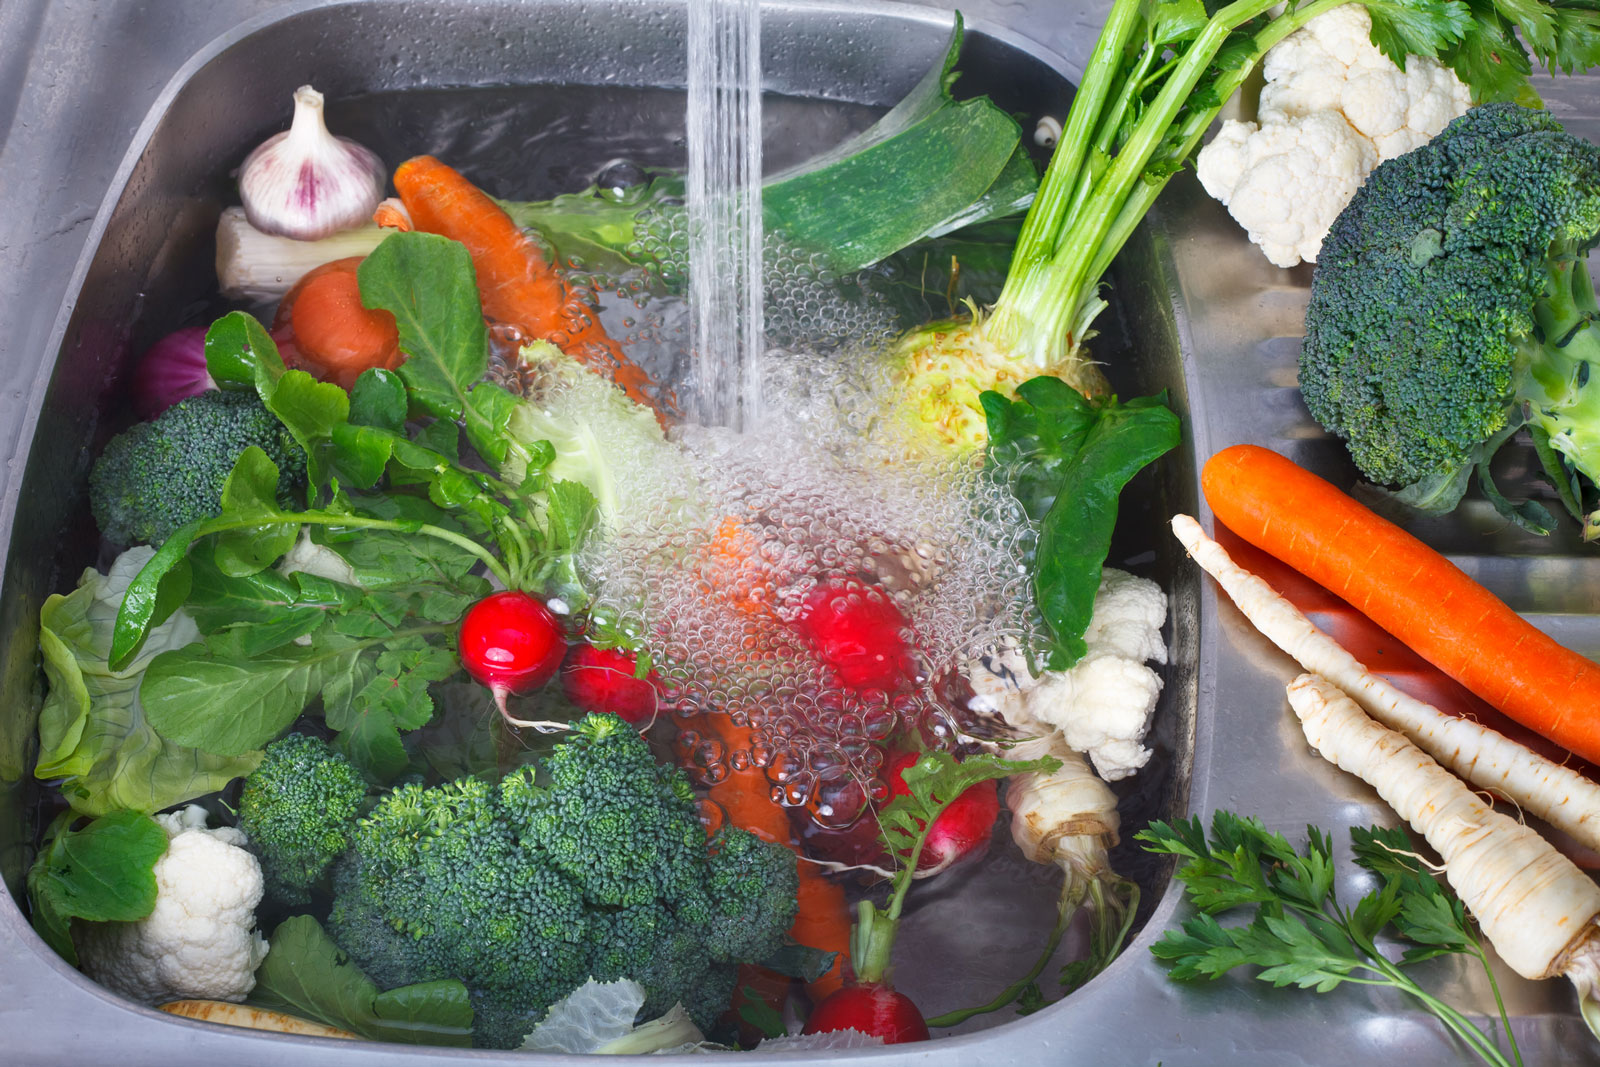 ضع الفواكه والخضروات في ماء ساخن لمدة 15 دقيقة على الأقل 